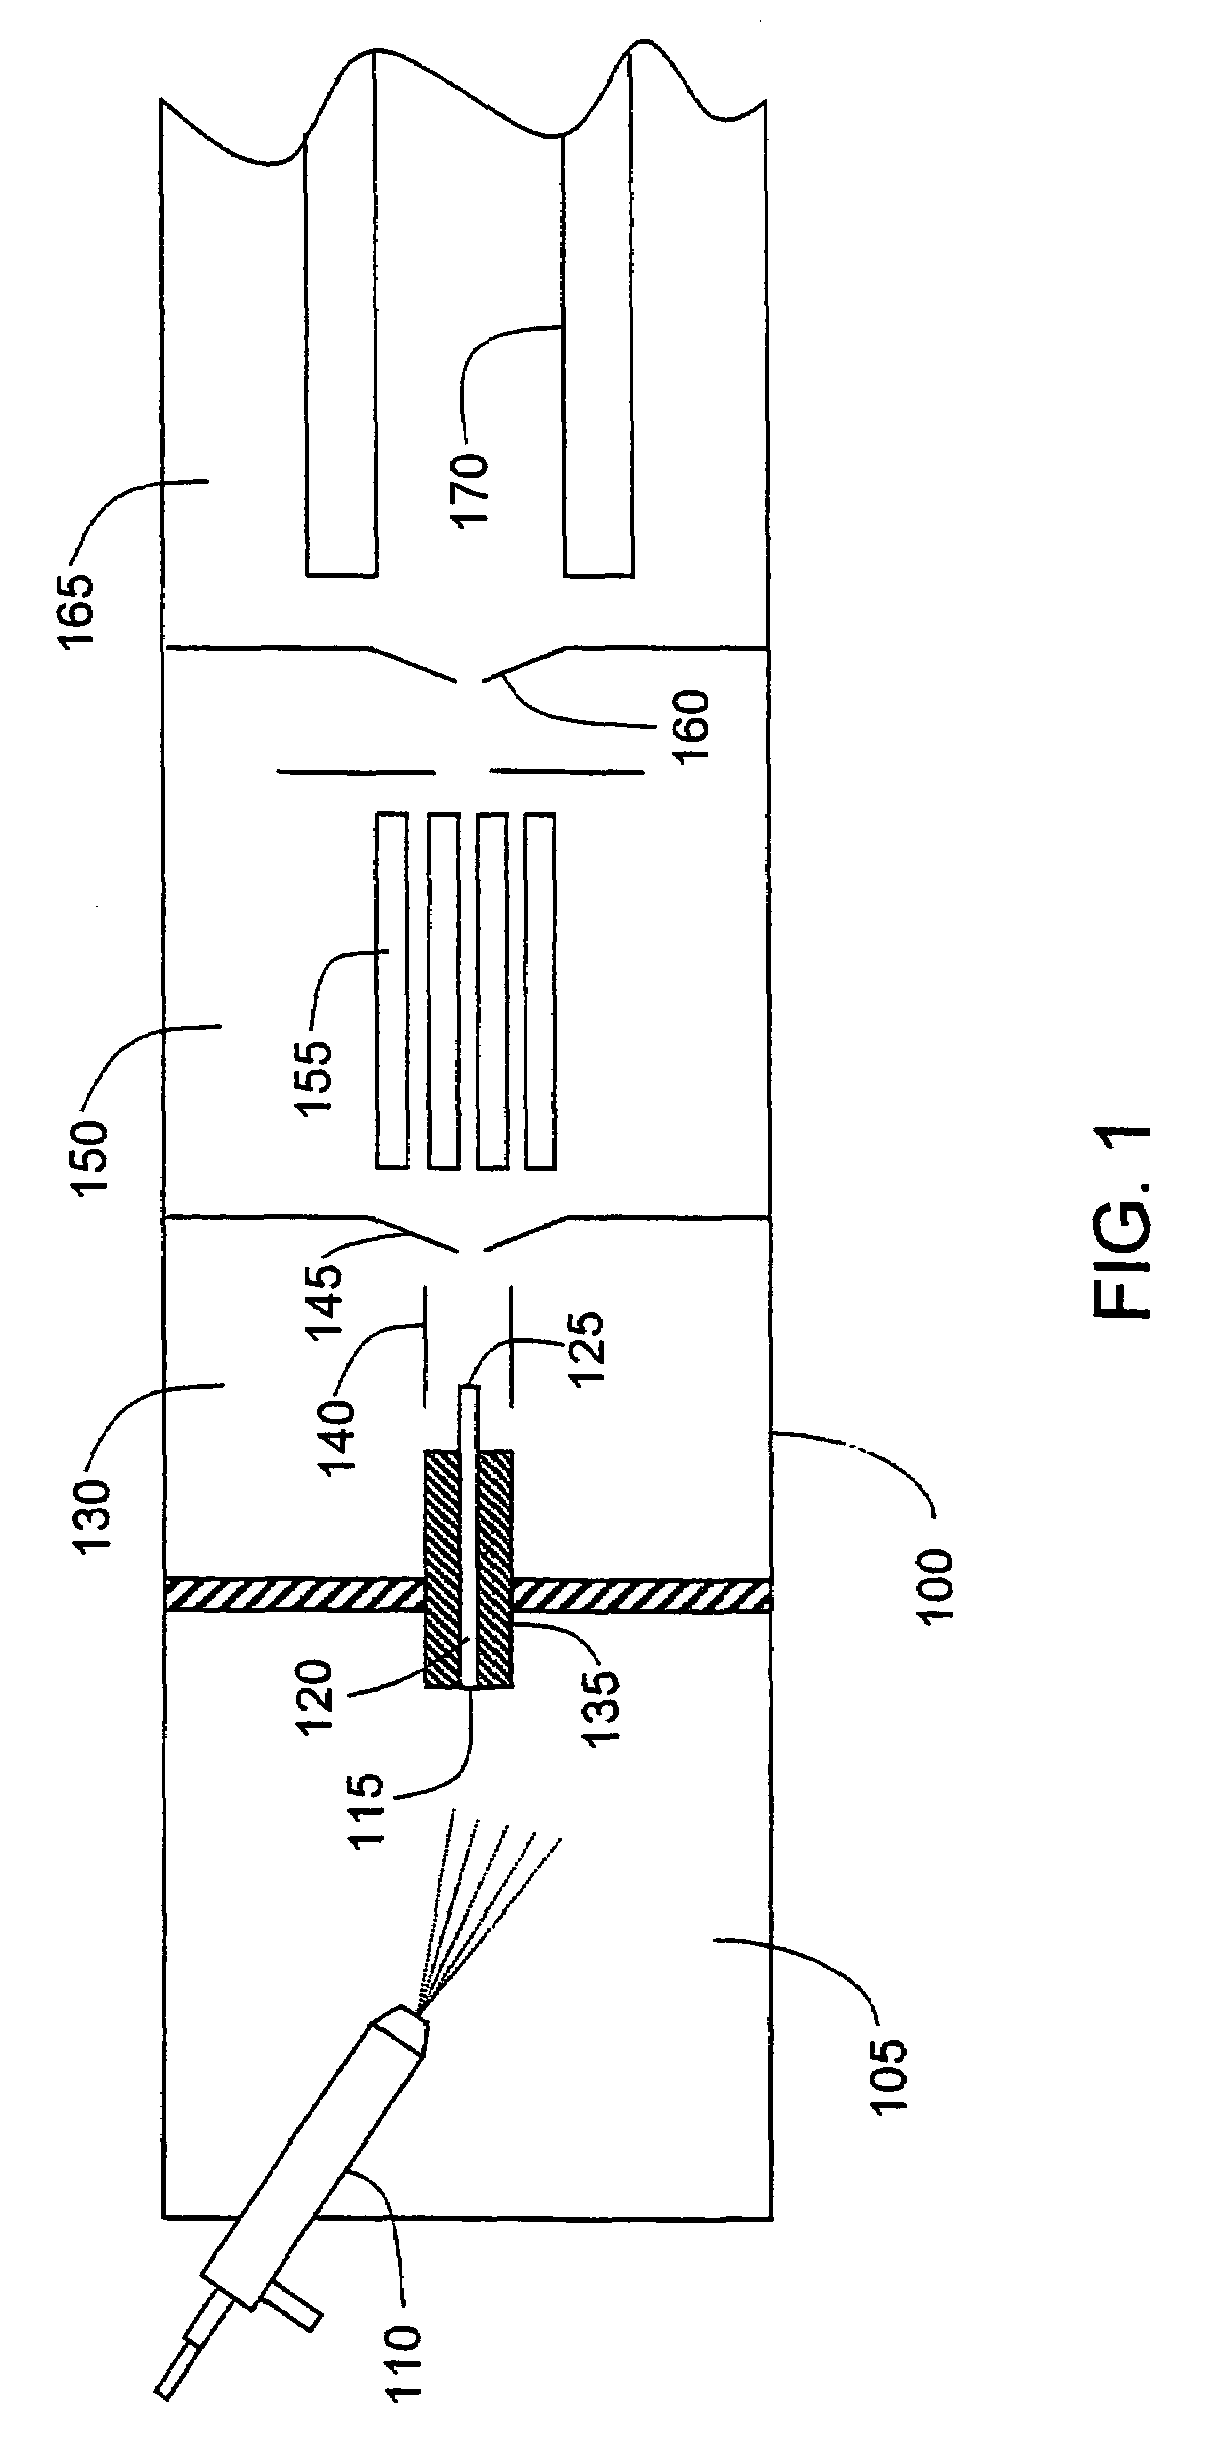 Electrospray ion source apparatus